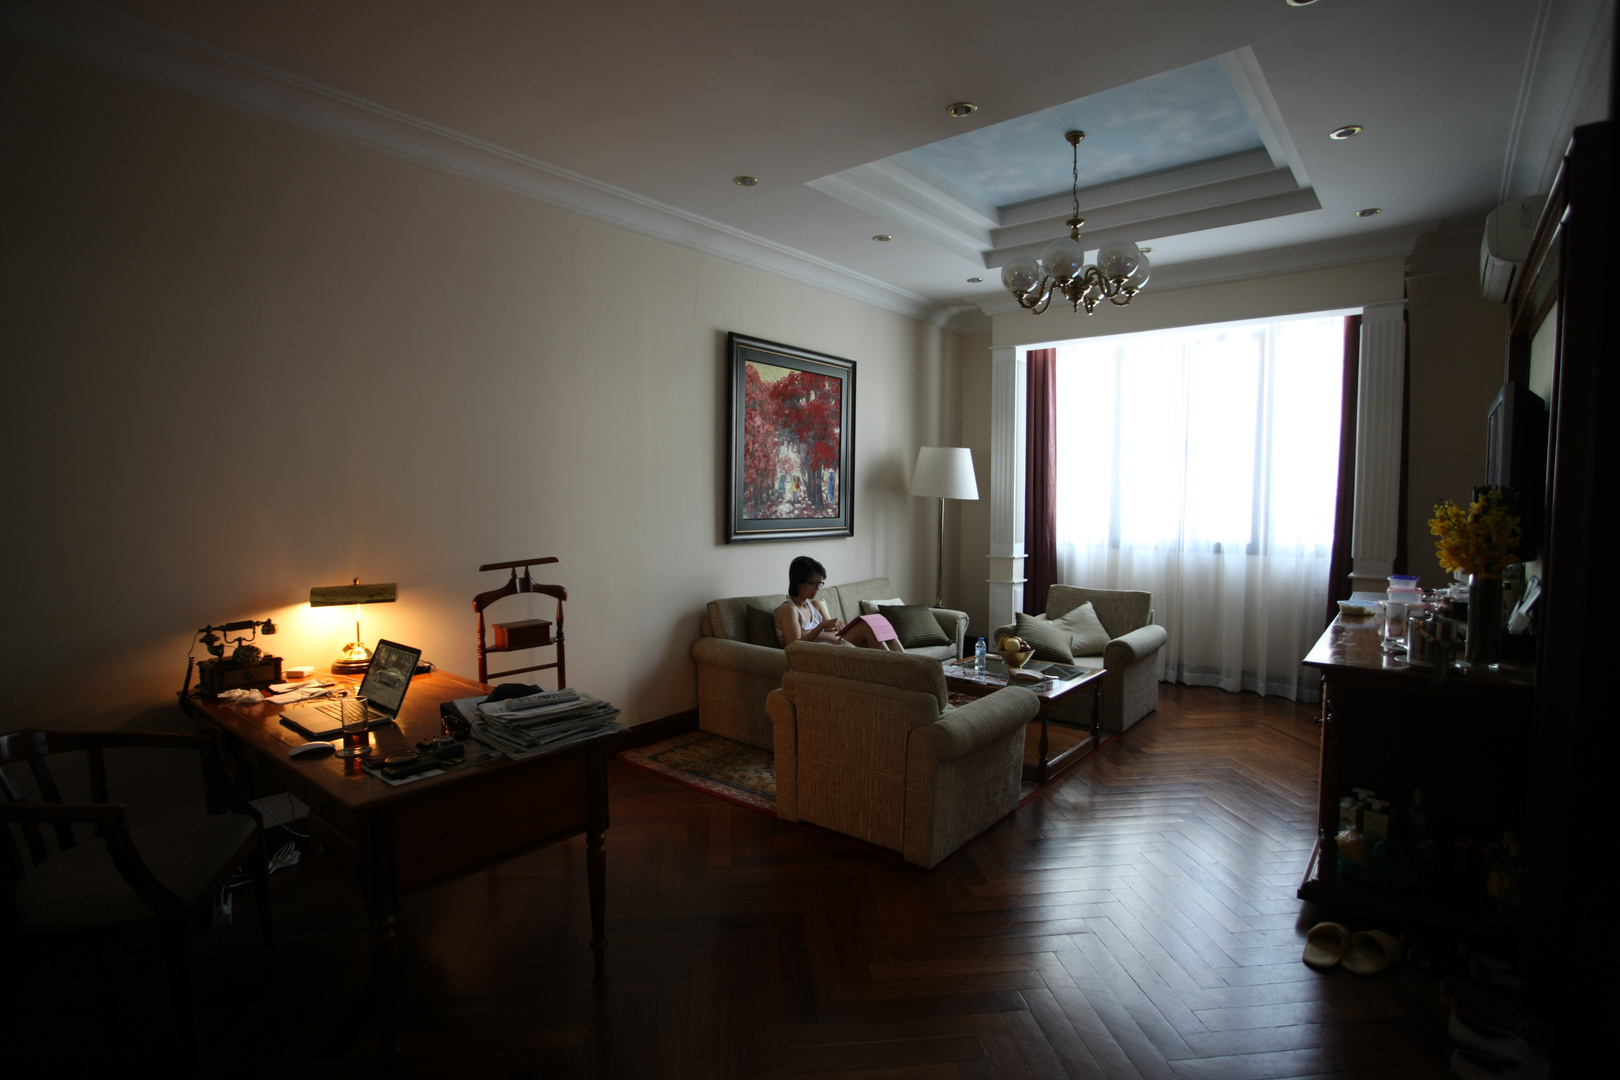 PAT_1714Le salon de notre suite au Majestic de Saïgon en 2014...